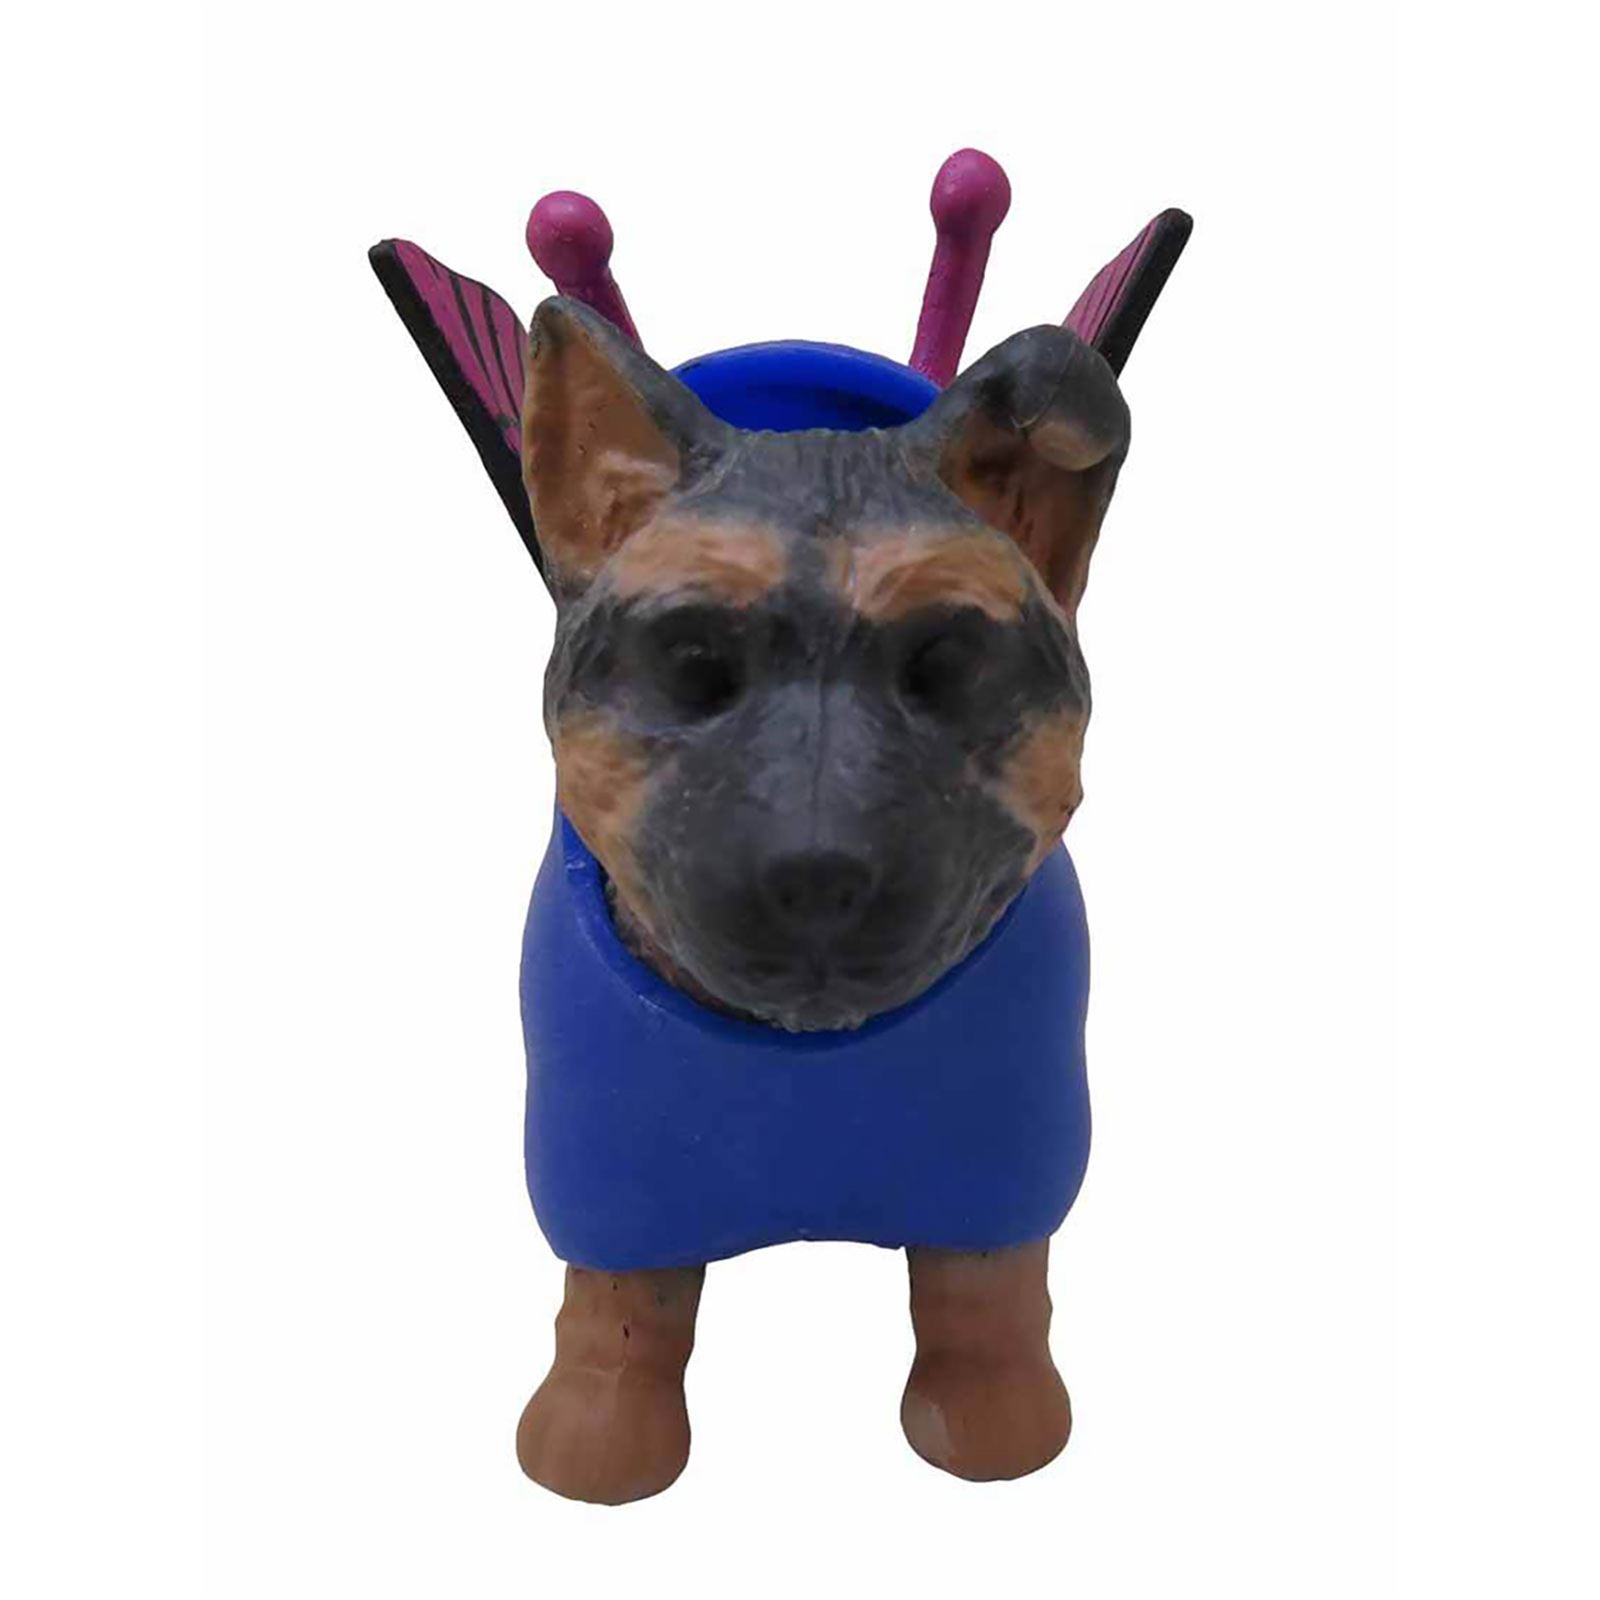 Sunman Oyuncak Diramix Dress Your Puppy Kostümlü Figürler Saks Mavisi